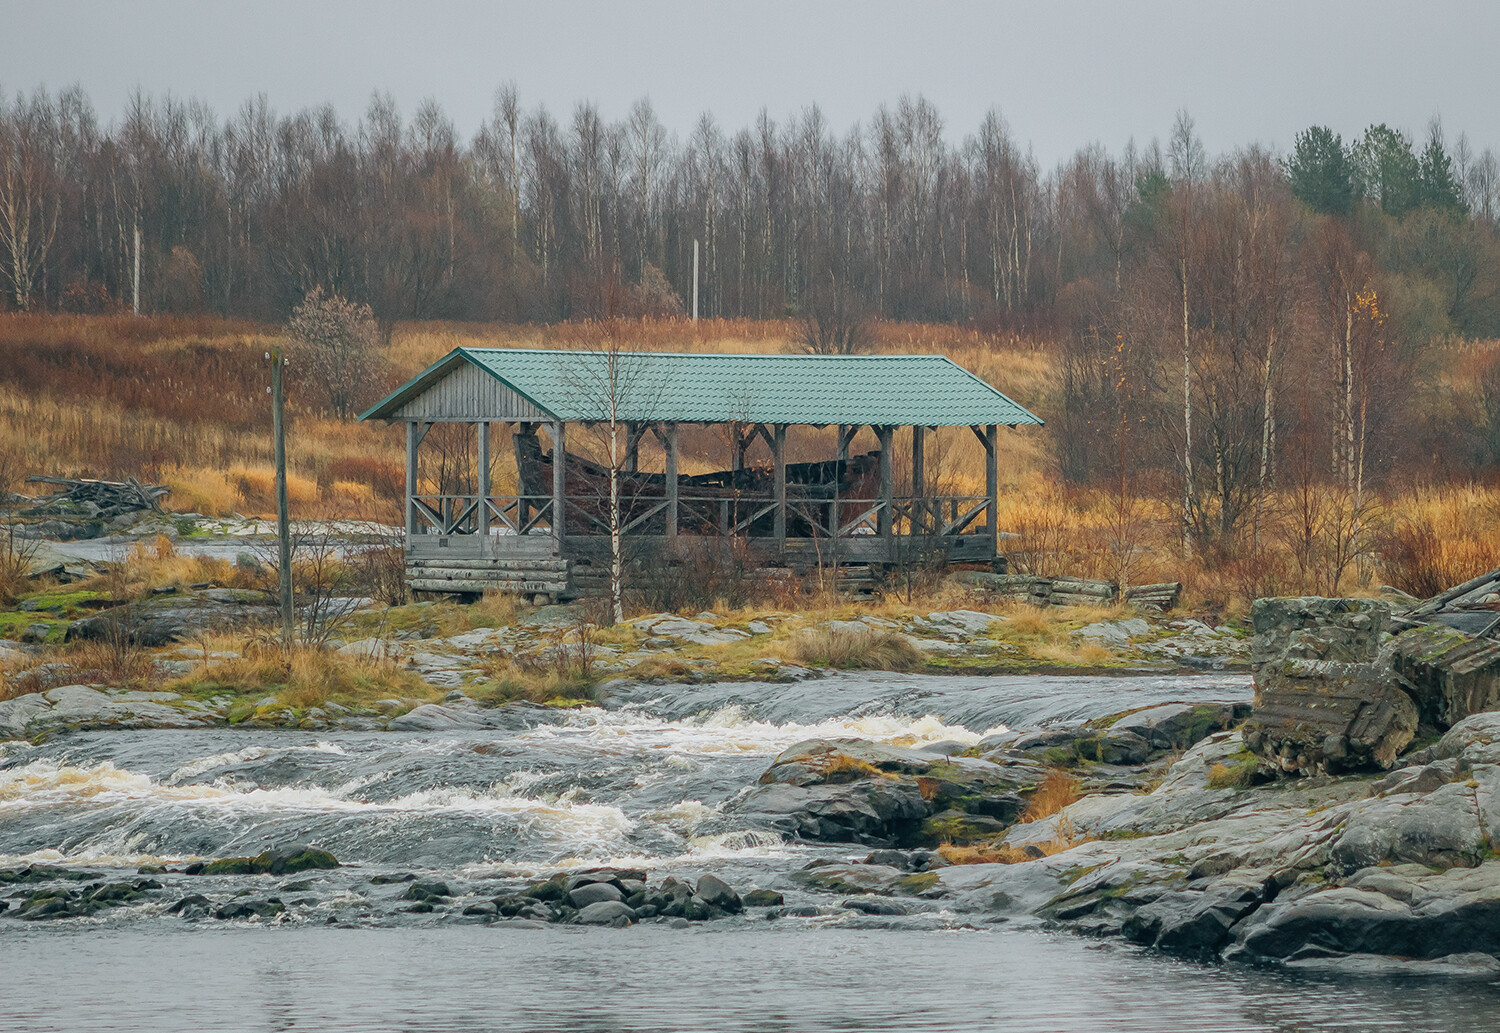 Ein Boot aus dem 19. Jahrhundert im Dorf Sumskij Posad, Karelien.
